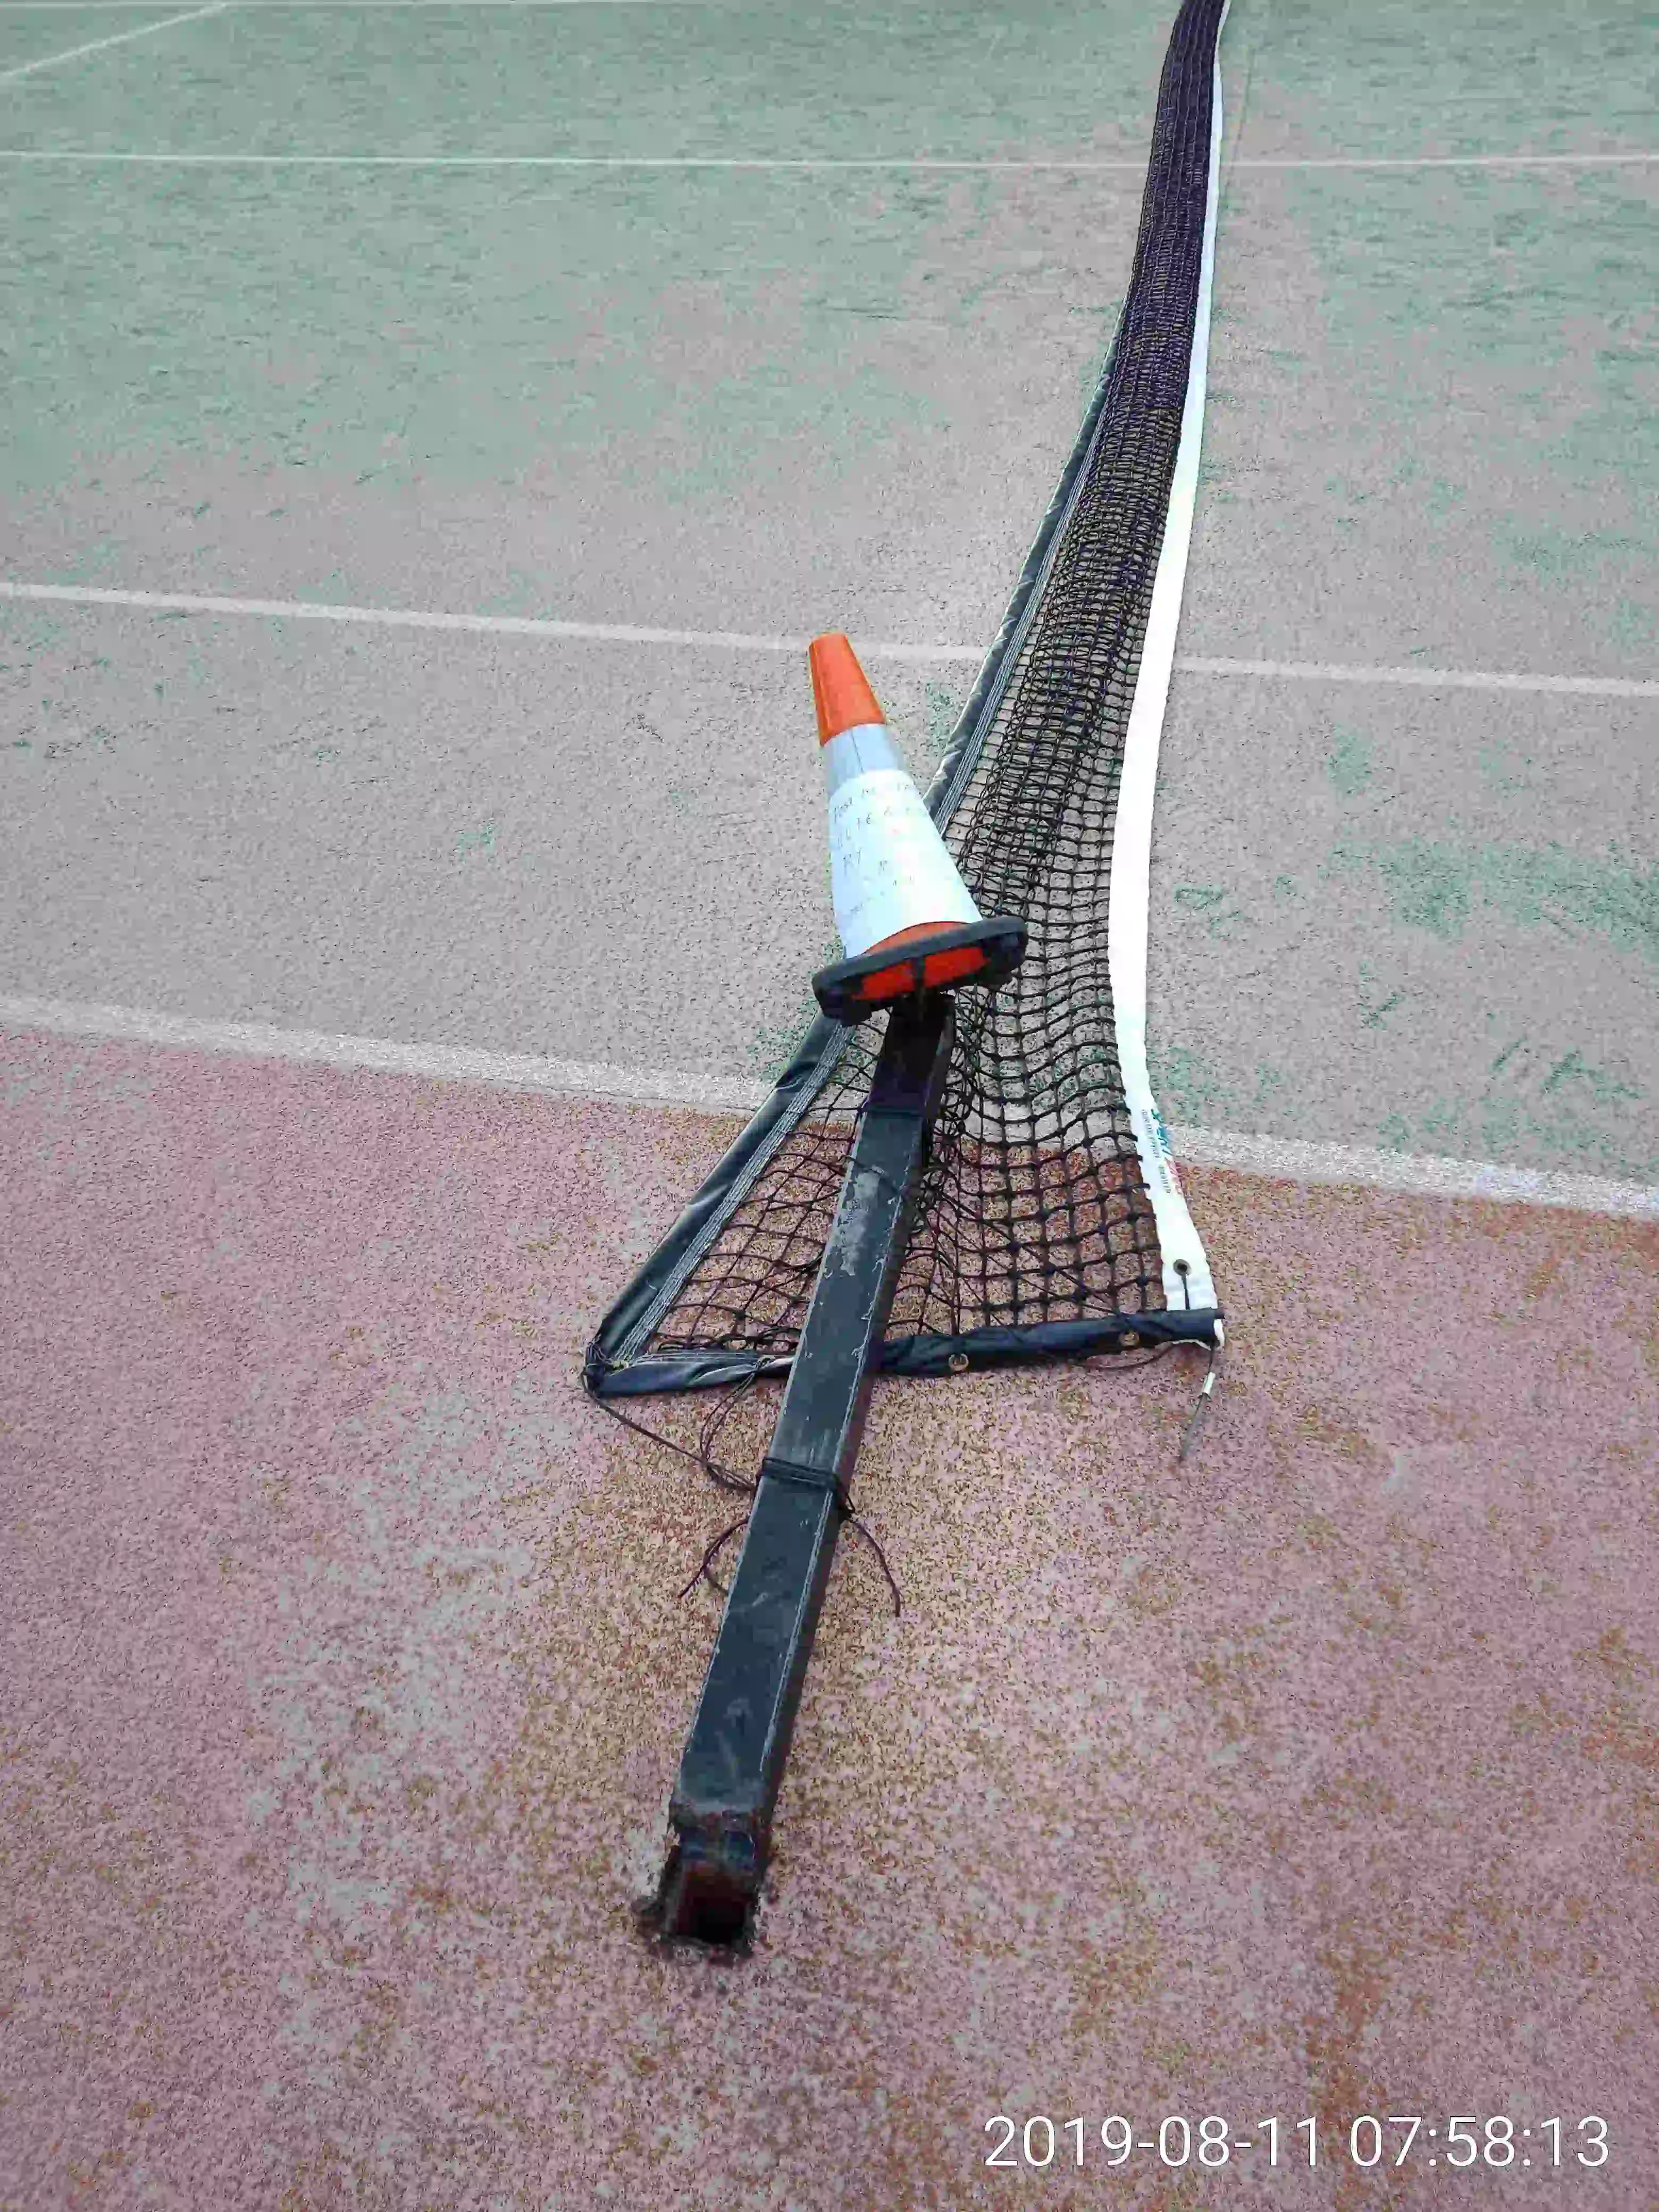 SP52948-tennis-court-2-damage-photo-1-11Aug2019.webp